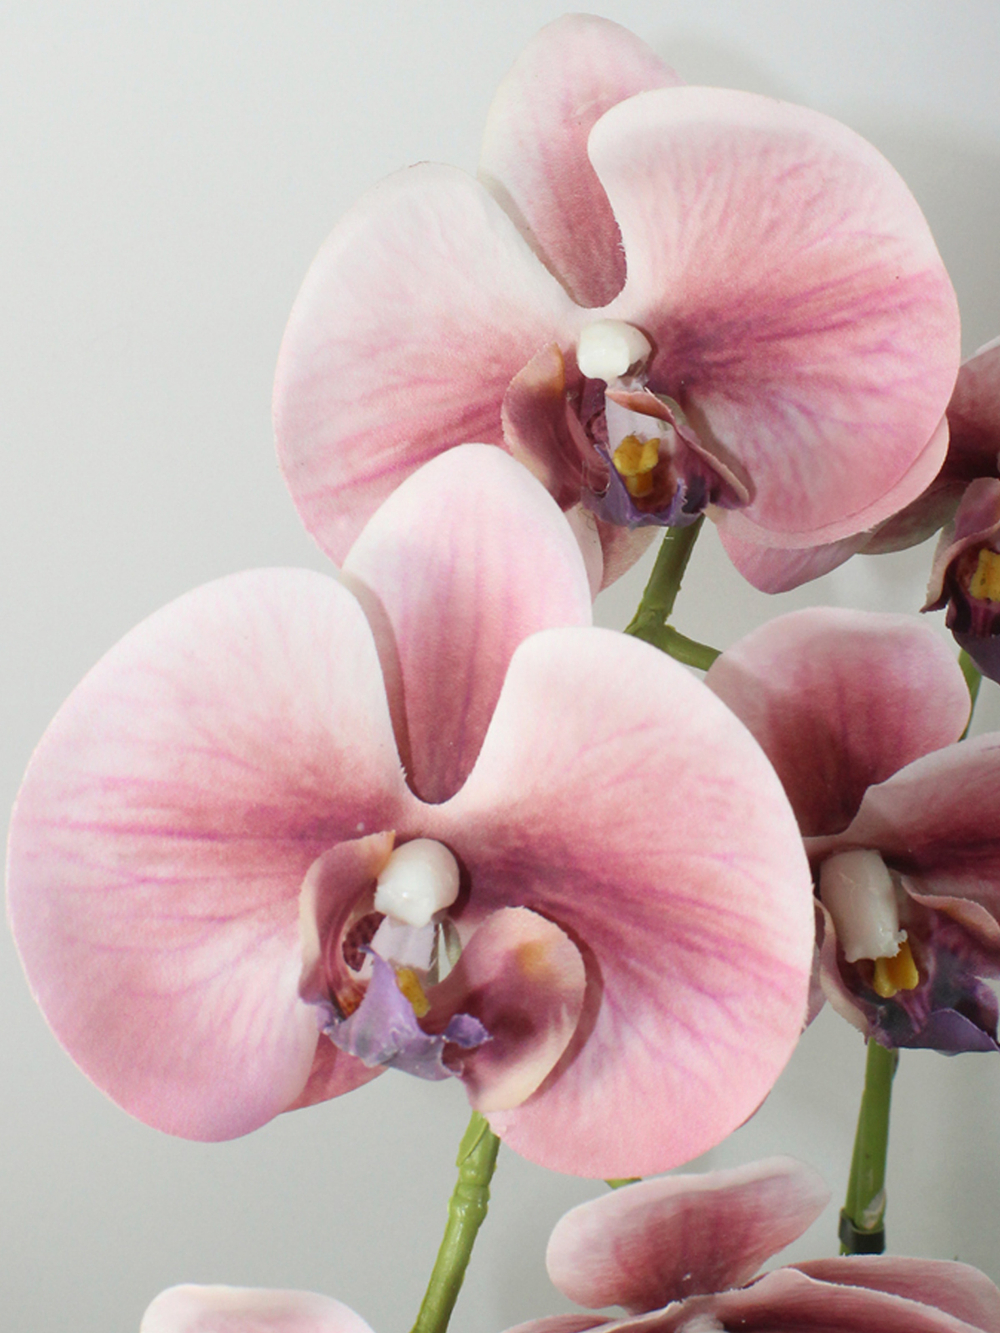 Искусственные Орхидеи темно-пудровые 2 ветки 55см в кашпо